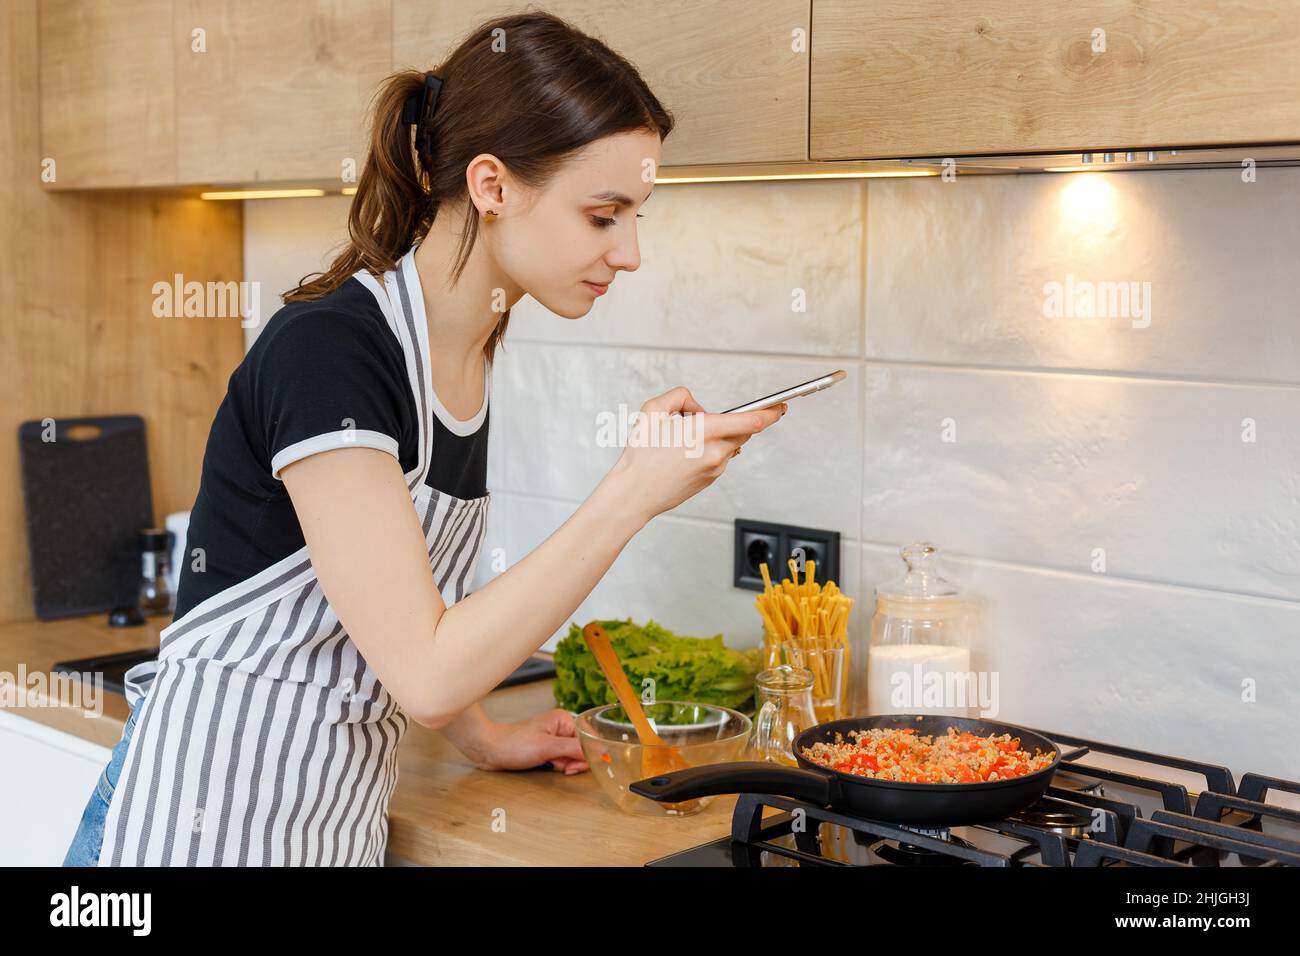 Une jeune femme blogueuse en tablier prend des photos avec le téléphone tout en cuisinant de la nourriture dans la cuisine.Préparation du repas avec une poêle à frire sur une cuisinière à gaz.Concept de style de vie domestique, de loisirs au foyer et de blogging culinaire. Banque D'Images